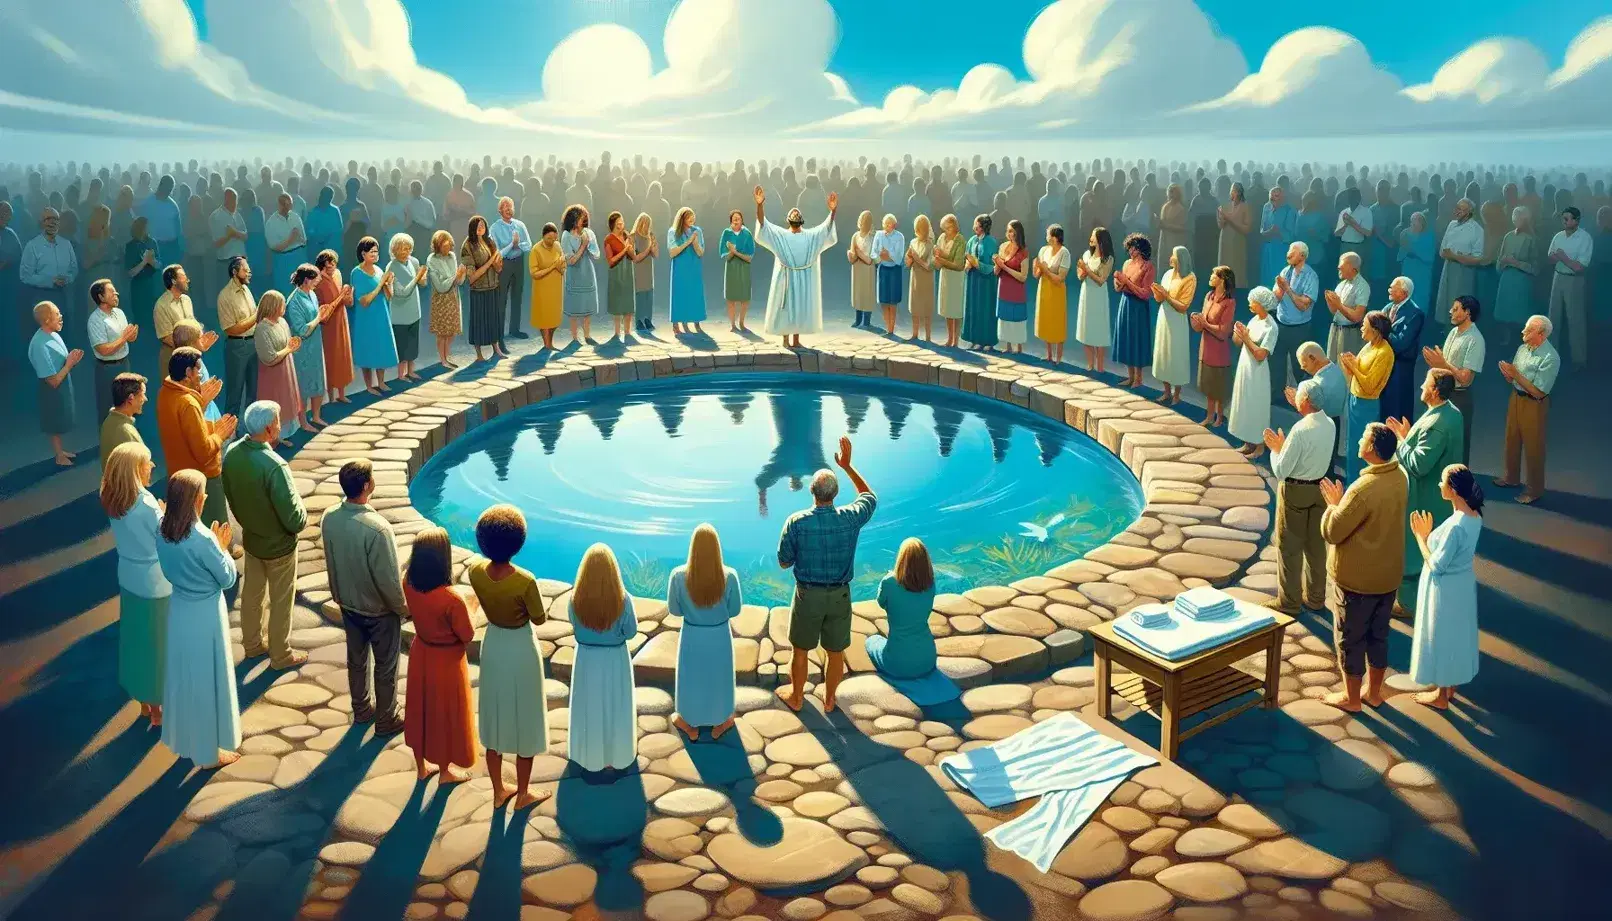 Grupo diverso de personas en acto de oración al aire libre, con una persona en el centro levantando las manos y una pila bautismal de piedra con agua reflejando el cielo azul.